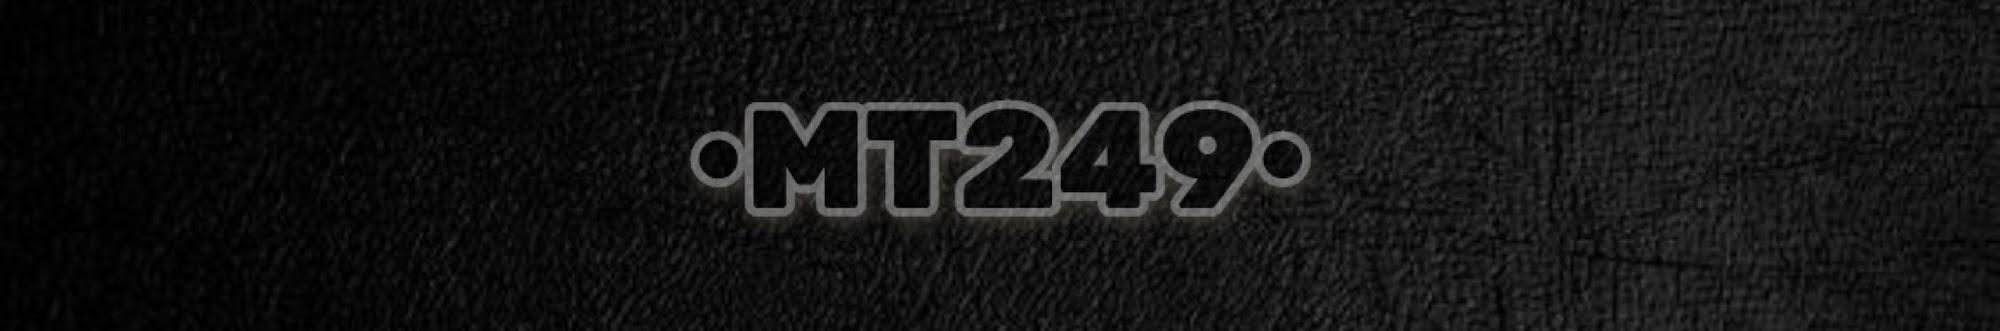 MT249 | اَم تي